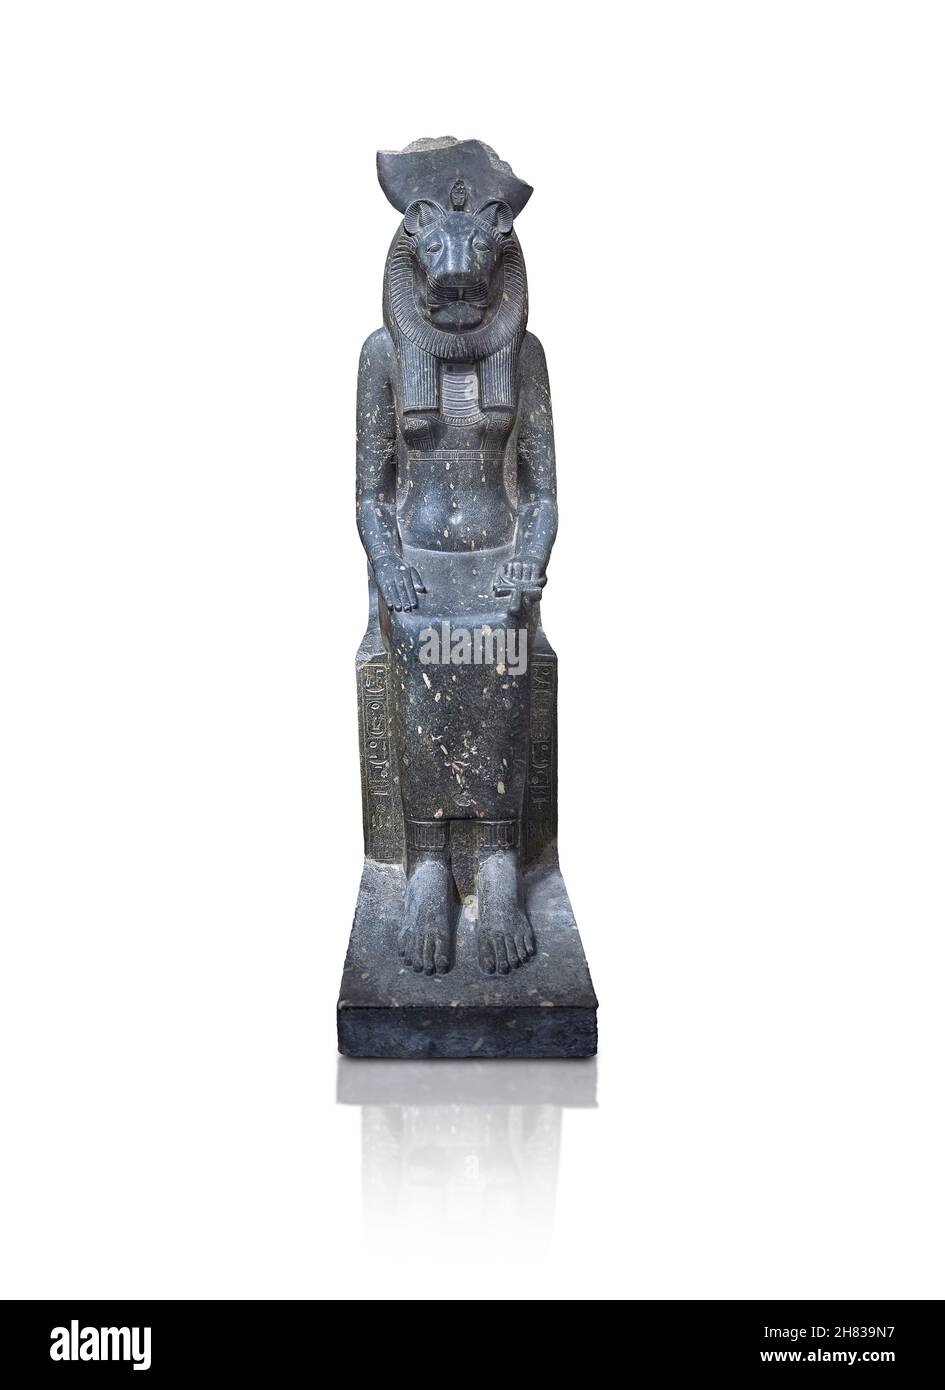 Alte ägyptische sitzende Statue der Göttin Sakhmet, 1410- 1372 BC 16th Dynastie, Mut Tempel Karnak. Kunsthistorisches Museum Wien Inv. AS 77. Diori Stockfoto